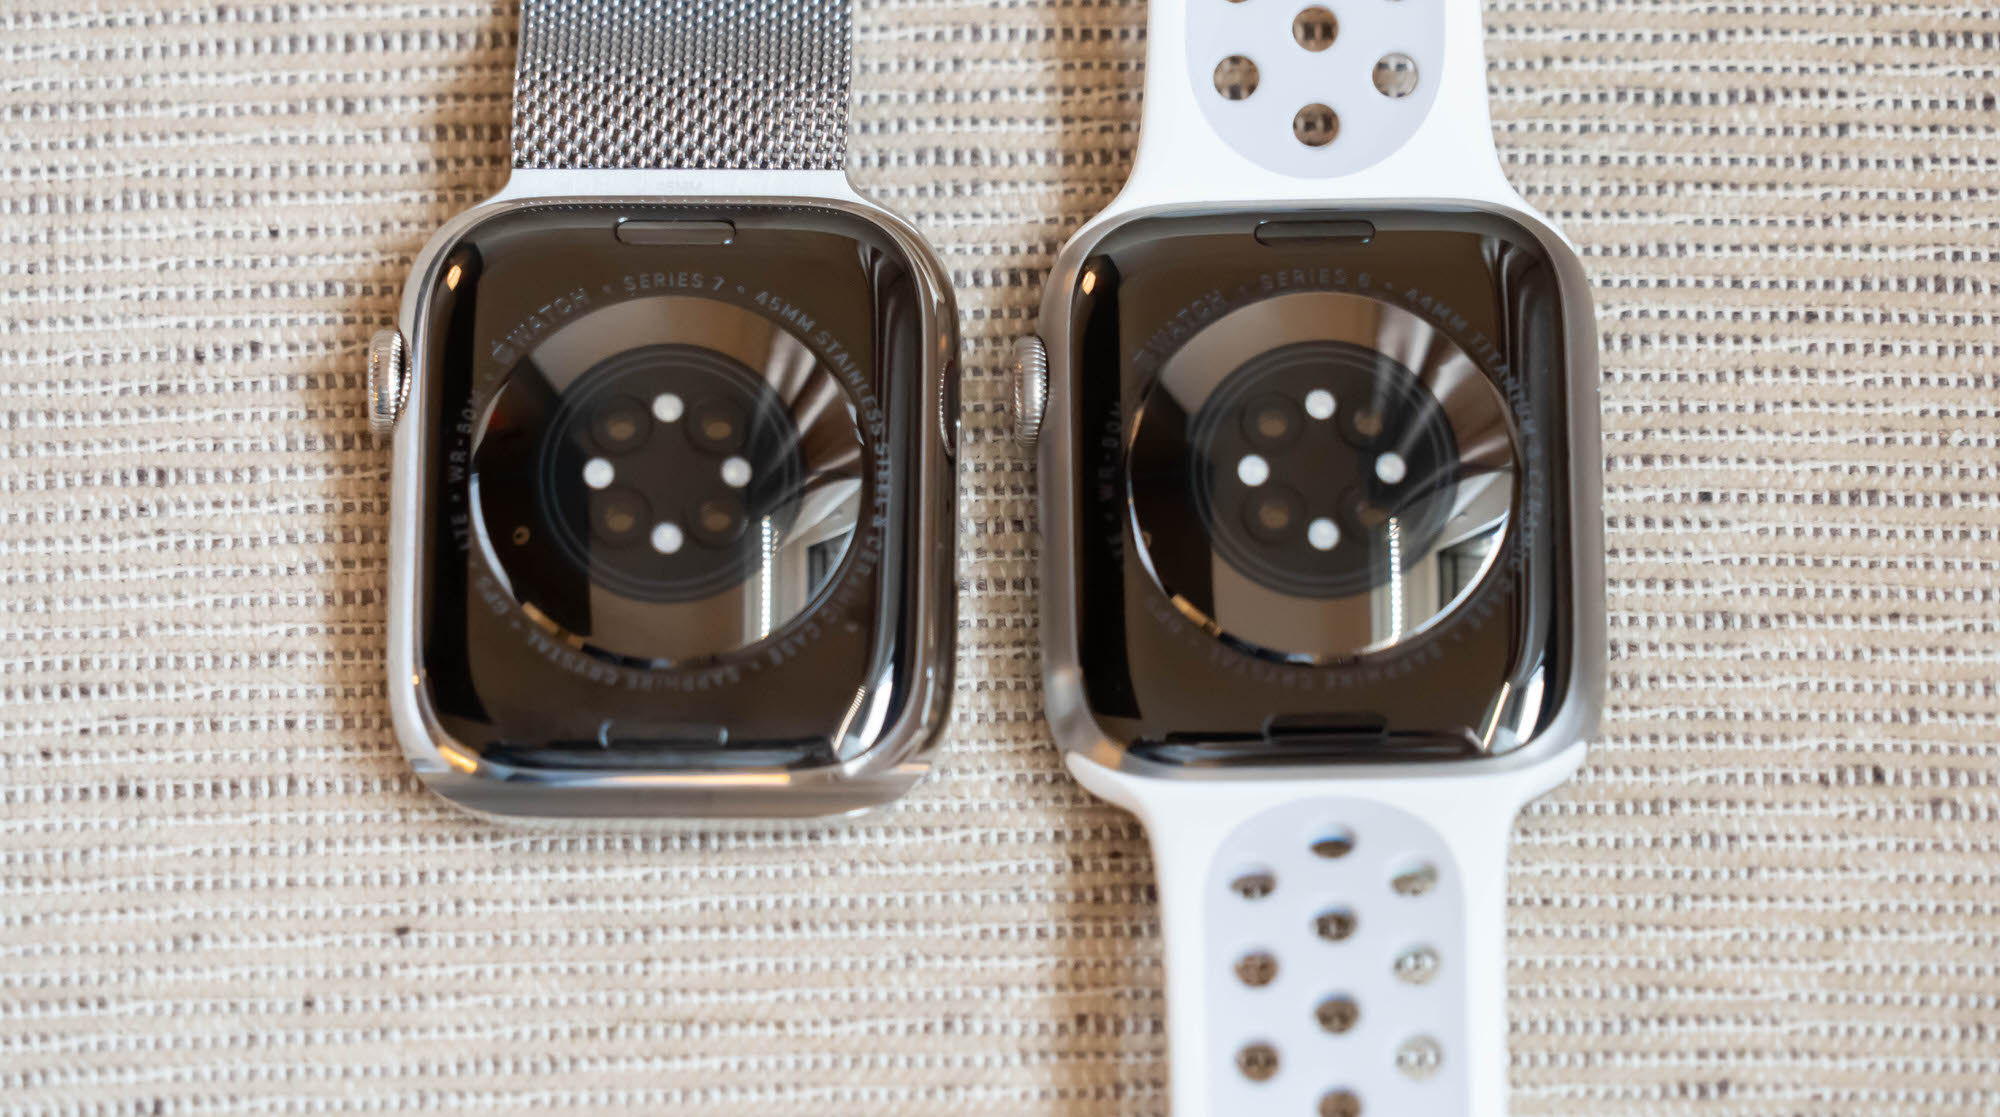 Apple Watch Series 7 レビュー。画面がさらに大きくなった新型モデル 